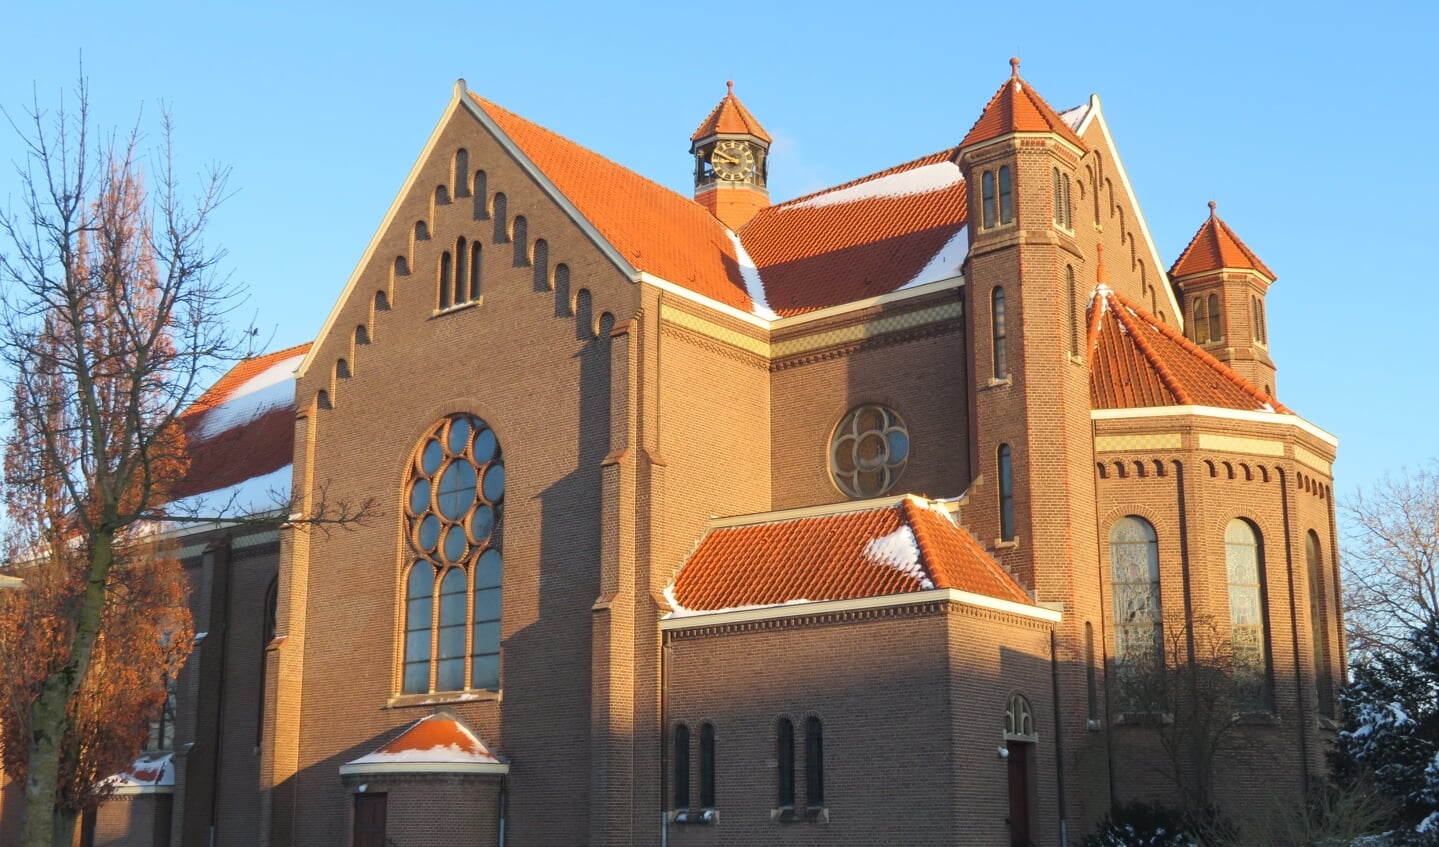 Kerk in Ewijk in de sneeuw